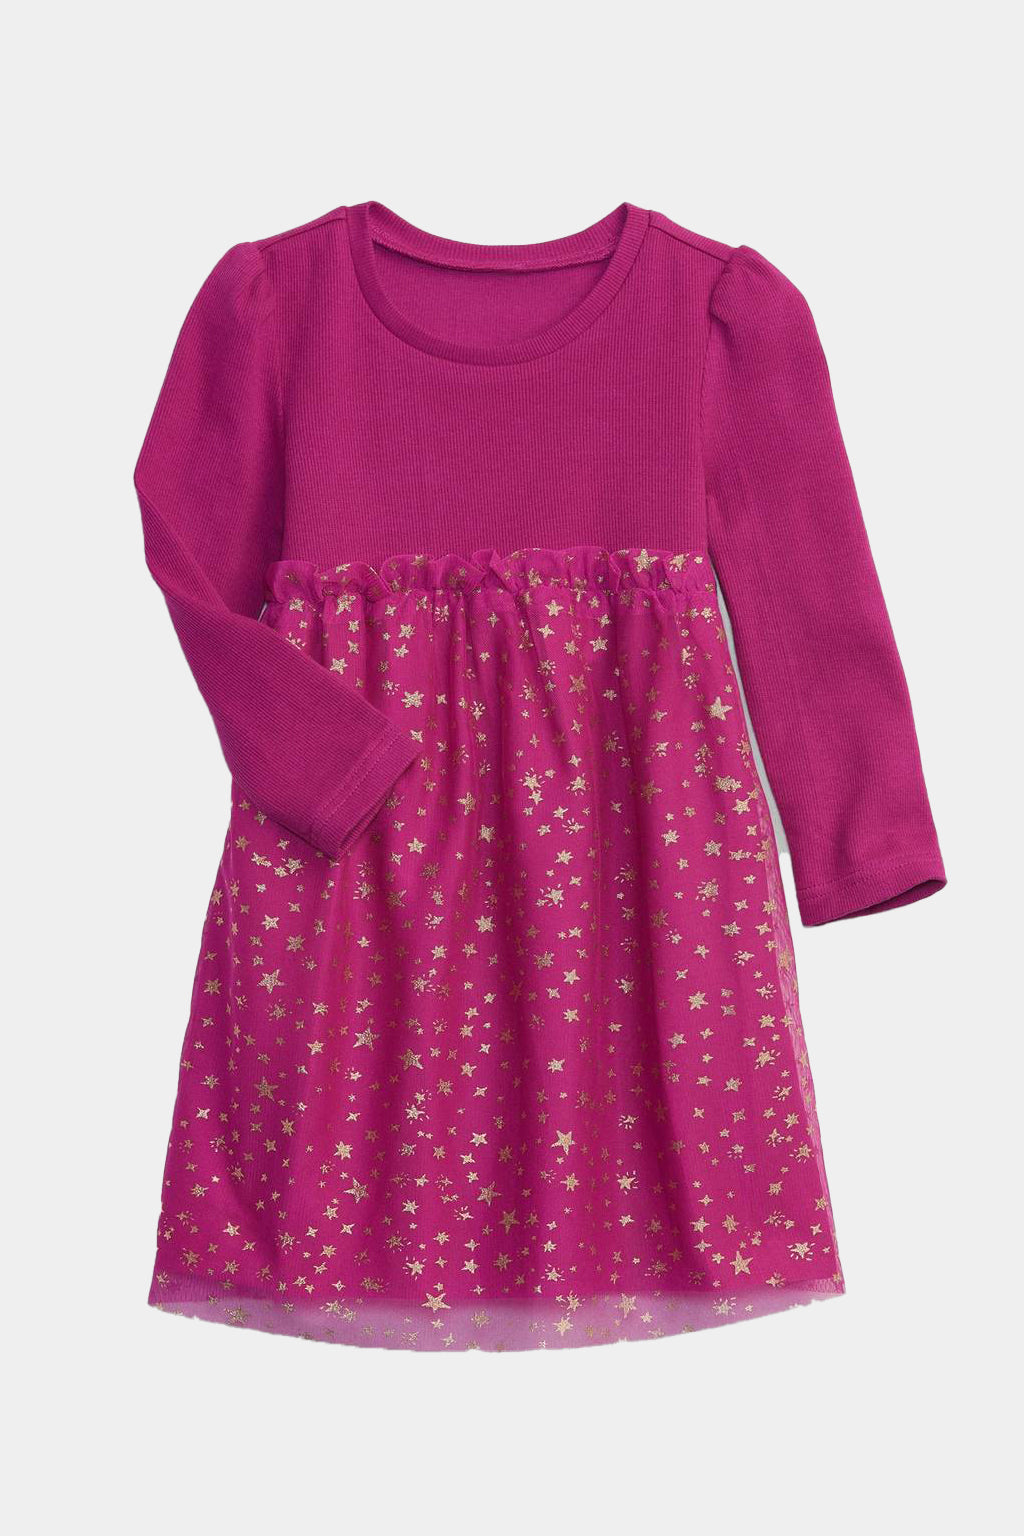 Gap - Babygap 2-in-1 Tulle Dress